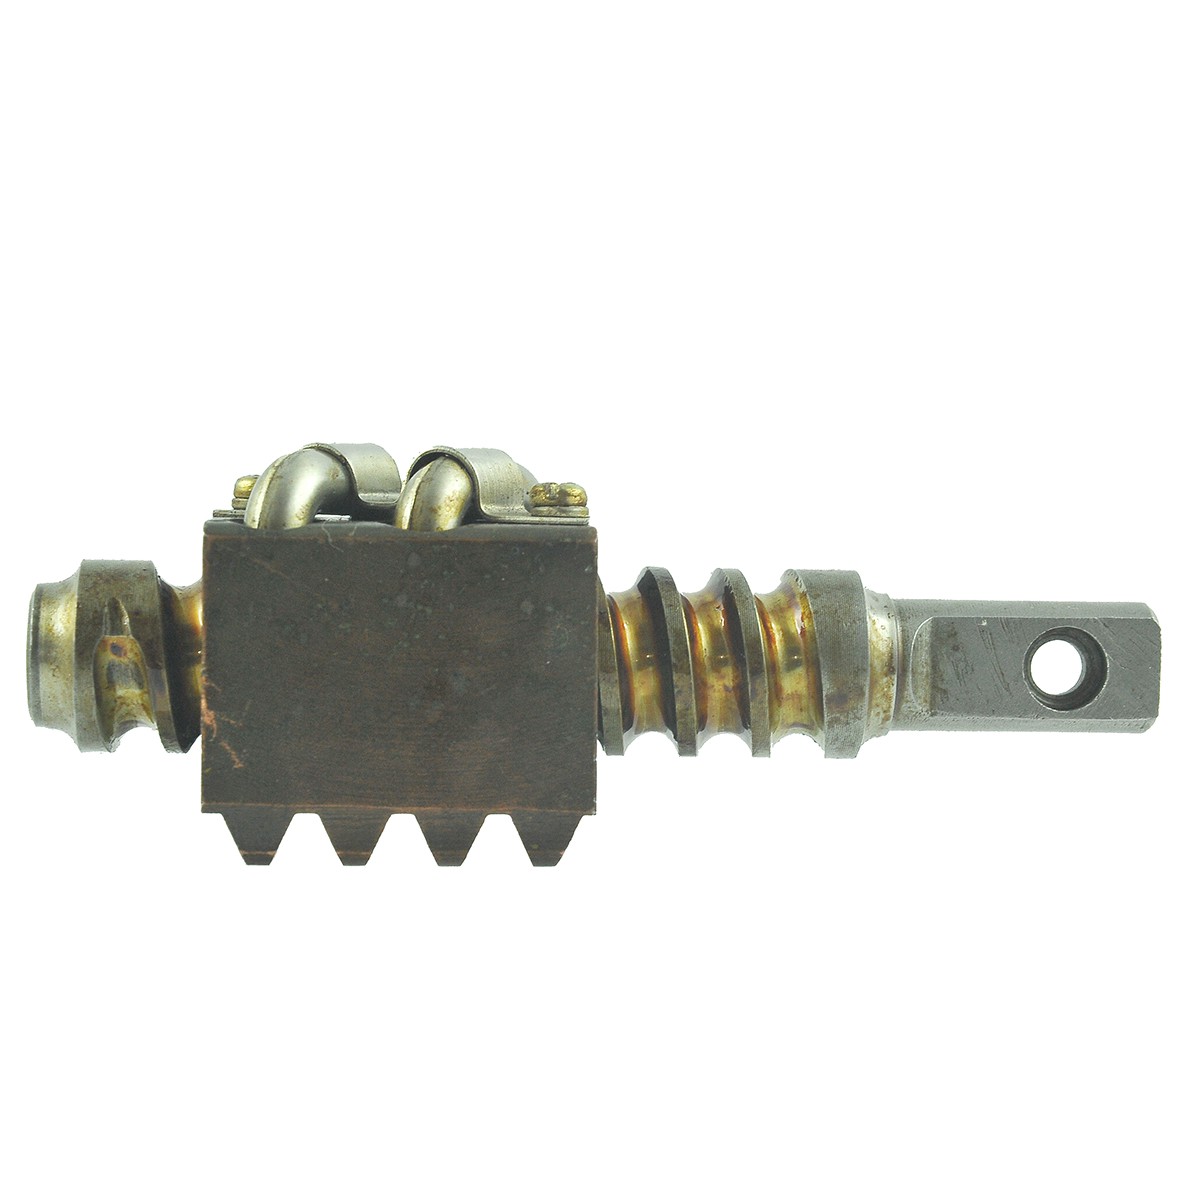 Steering column shaft 135 mm / Kubota L1802/L2002/L2202/L2402/L2602/L2802/L3202/L3602/L4202 / 6-01-100-01